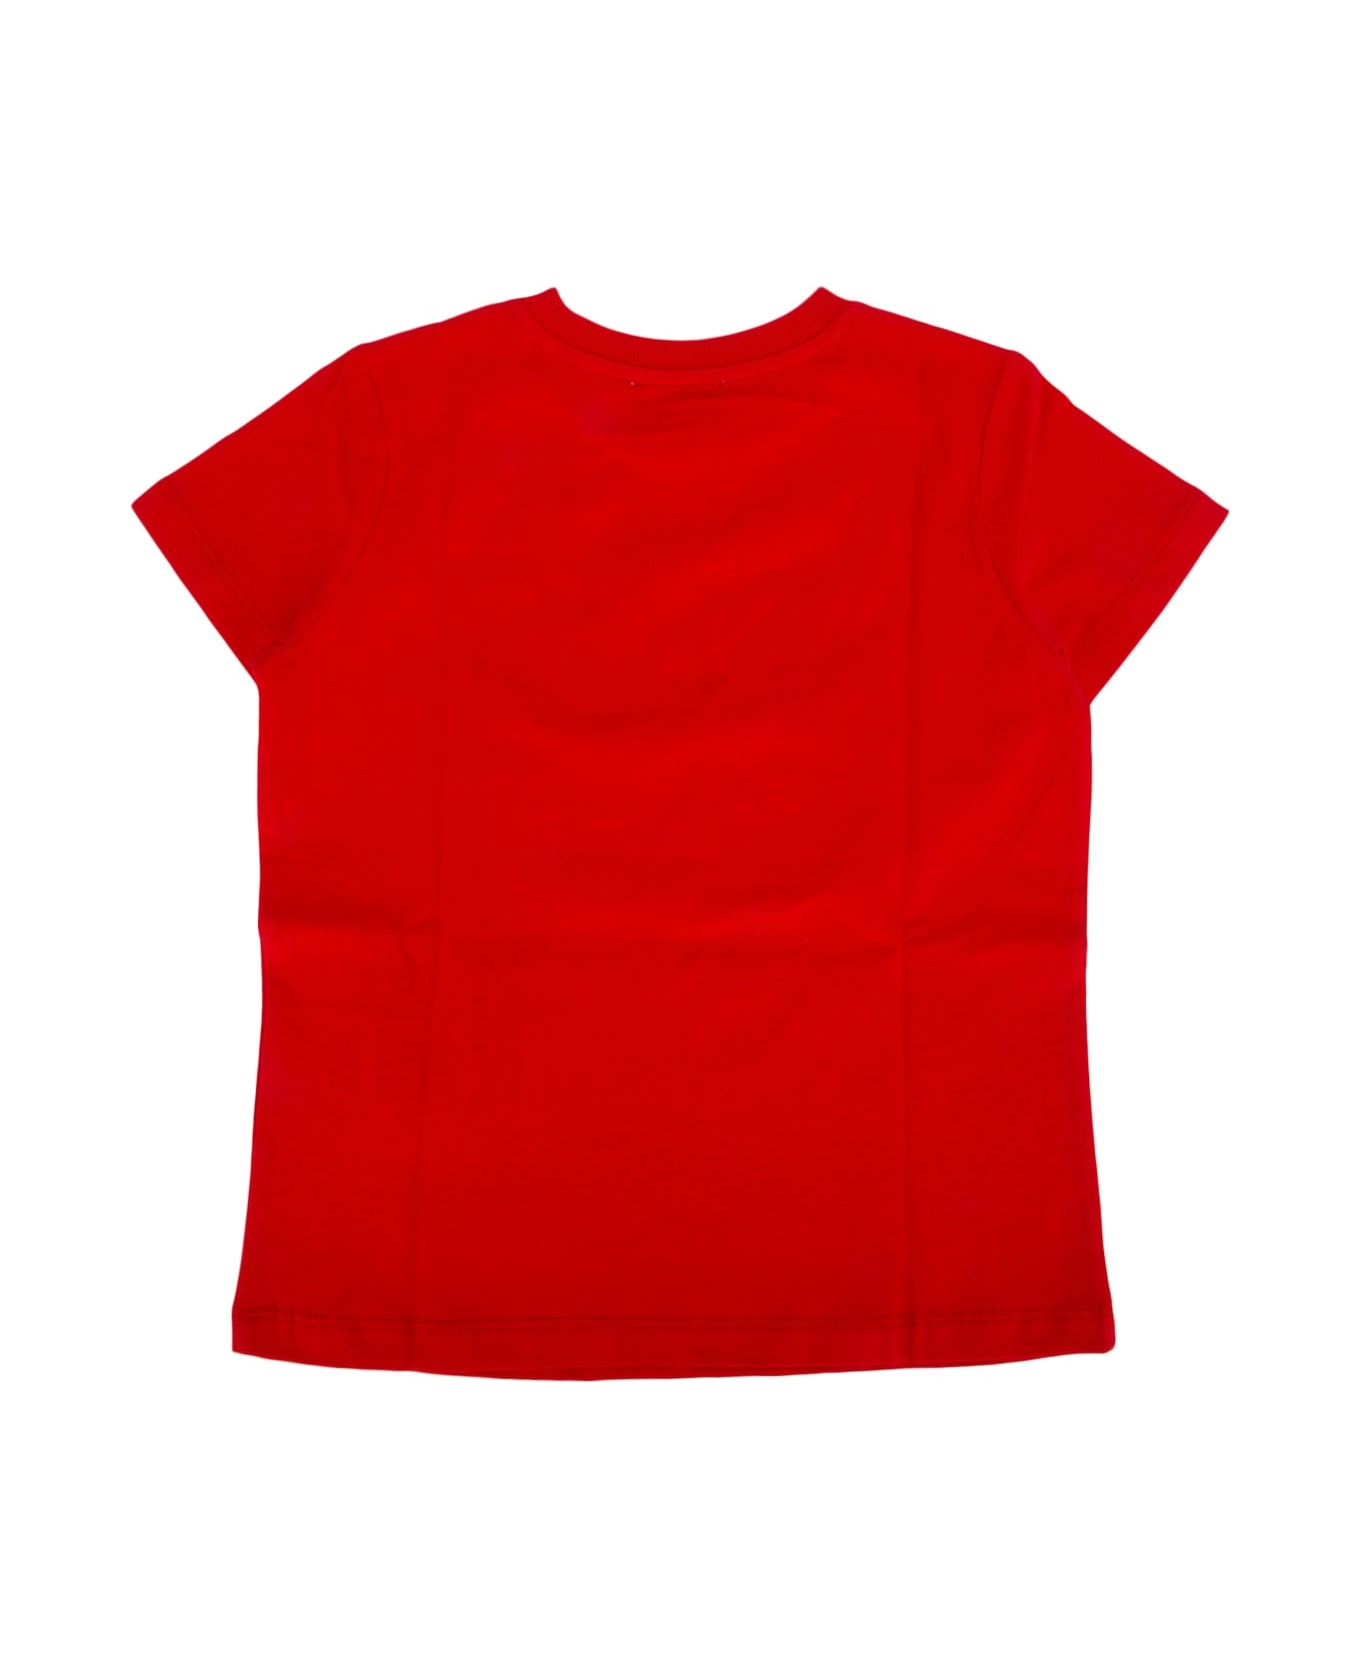 Moschino T-shirt - POPPYRED